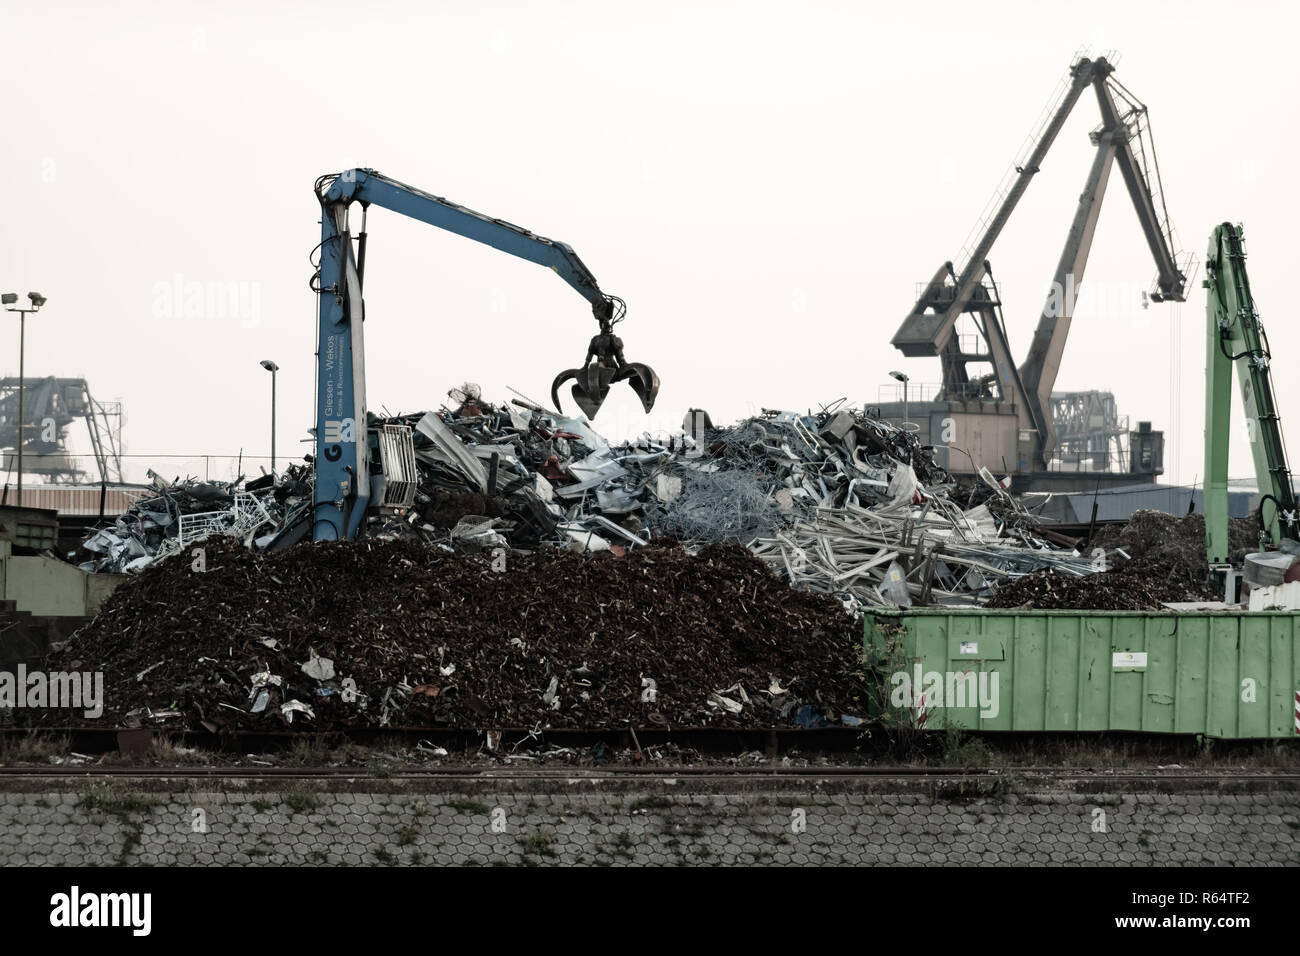 Ein Kran mit Greifer in Aktion auf Recyclinghof. Stockfoto